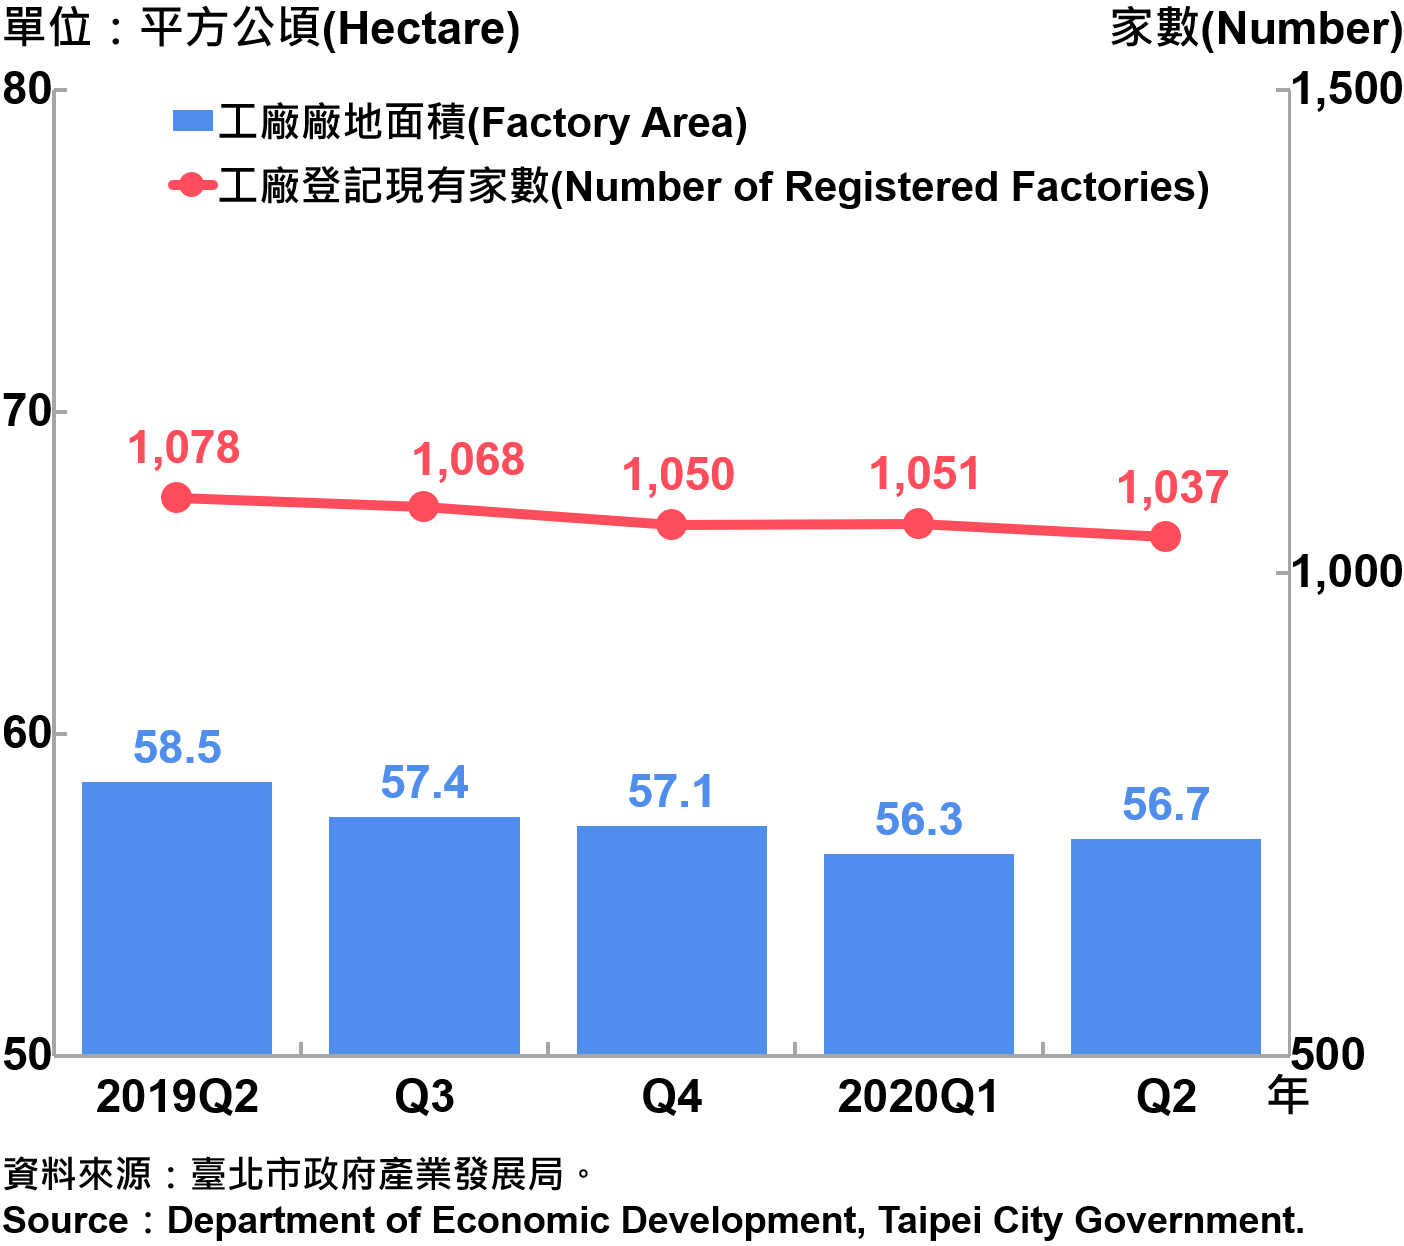 臺北市工廠登記家數及廠地面積—2020Q2 Number of Factories Registered and Factory Lands in Taipei—2020Q2